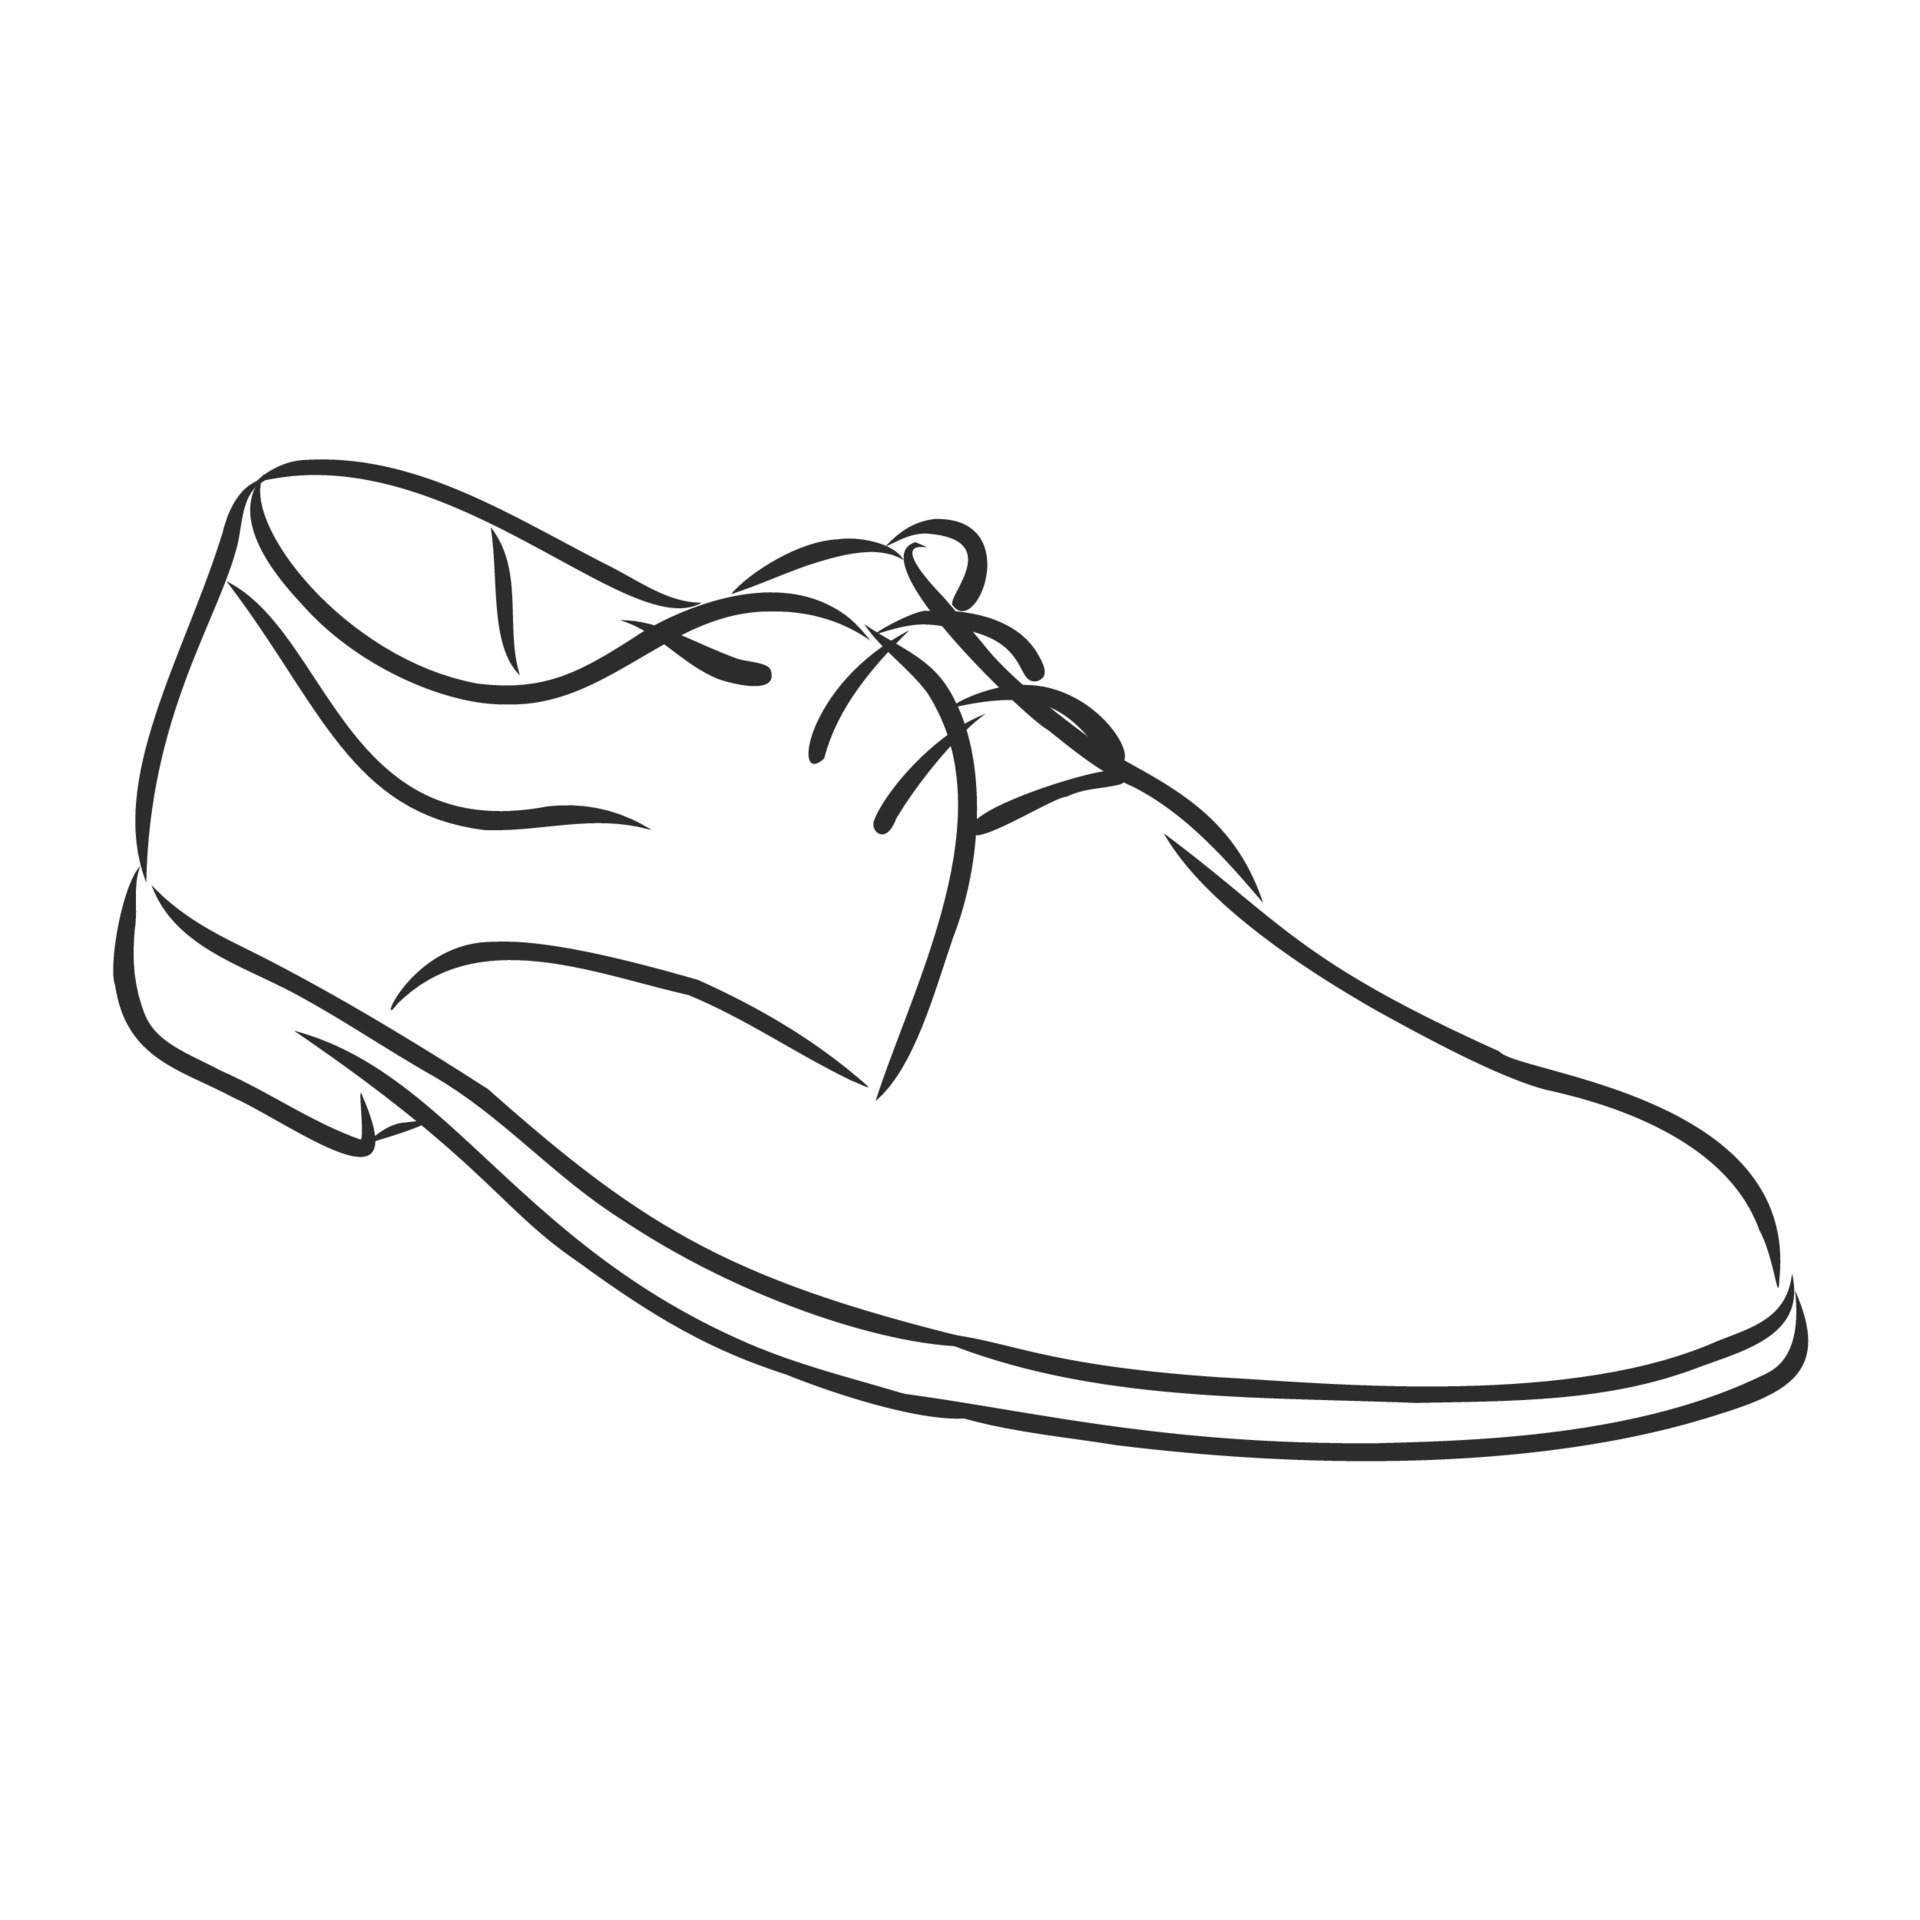 men's shoes vector sketch 8686369 Vector Art at Vecteezy